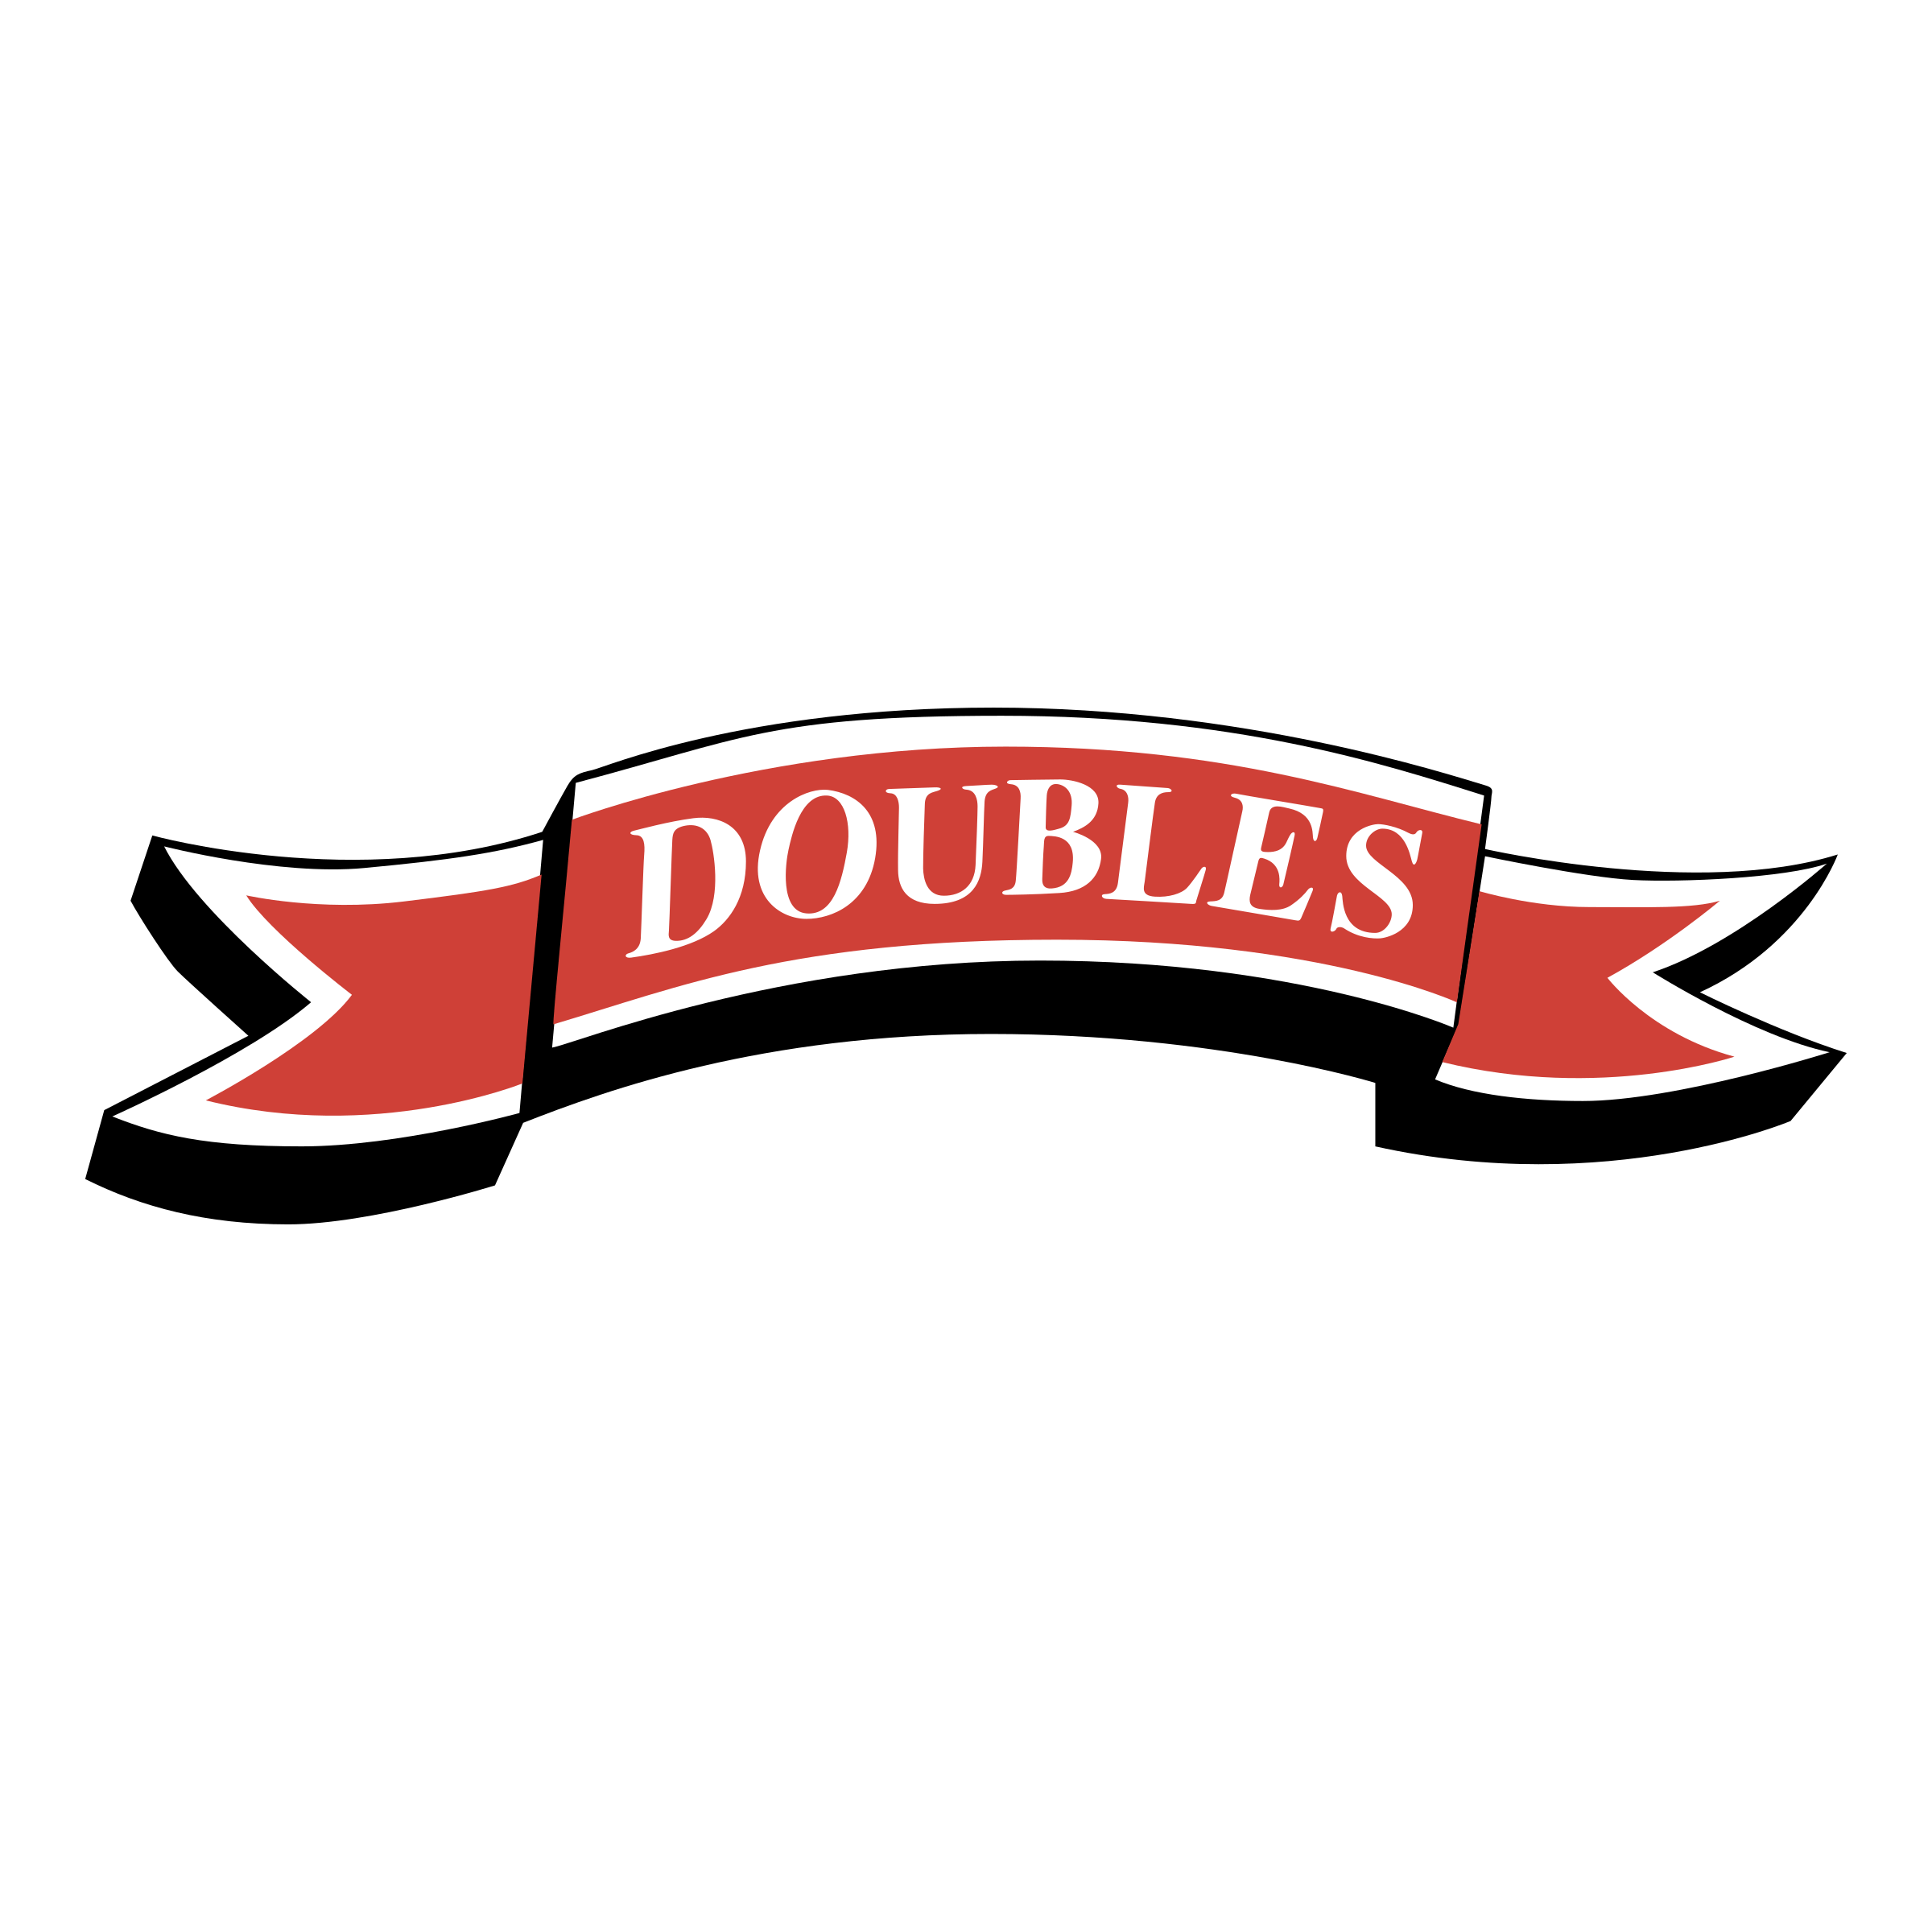 Double S Logo - Doubles Logo PNG Transparent & SVG Vector